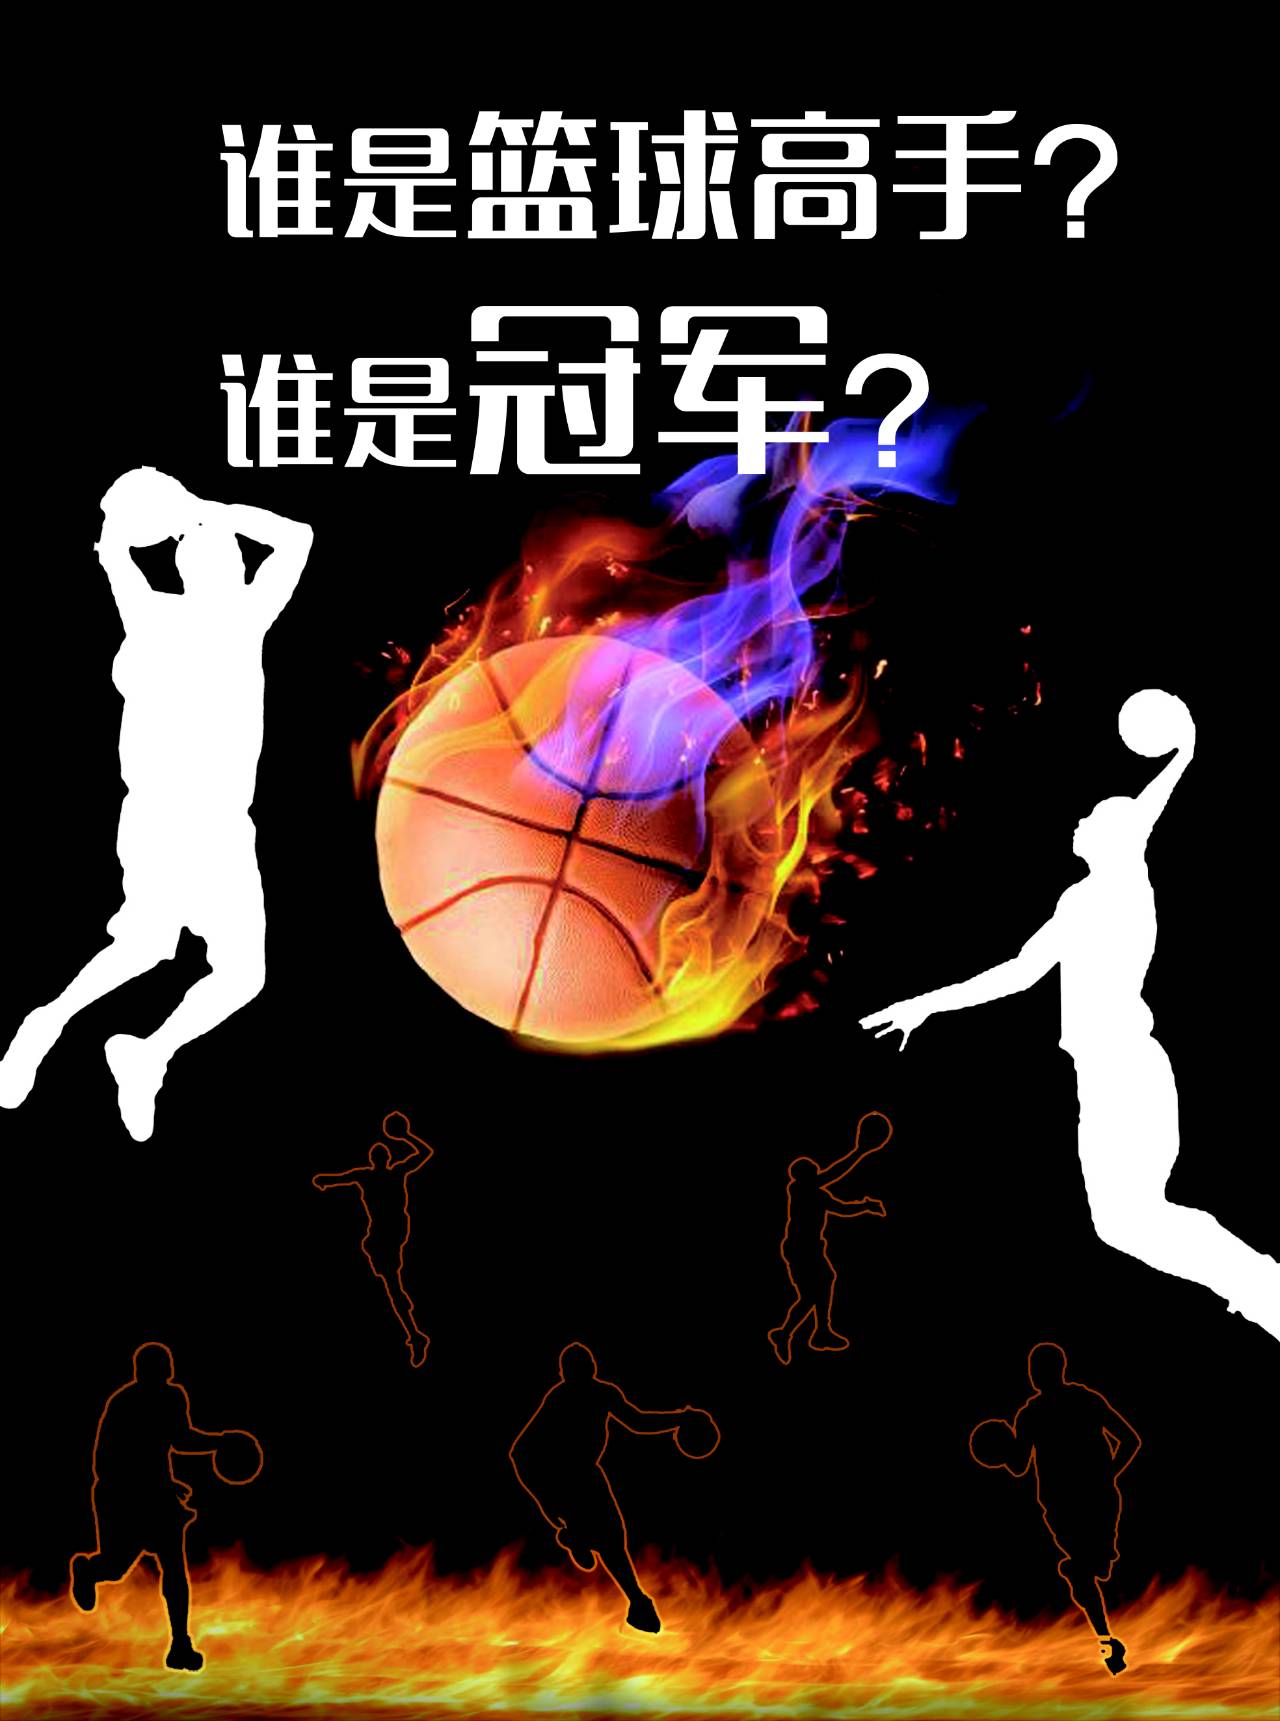 欢乐海岸3v3篮球小组赛火热争霸中